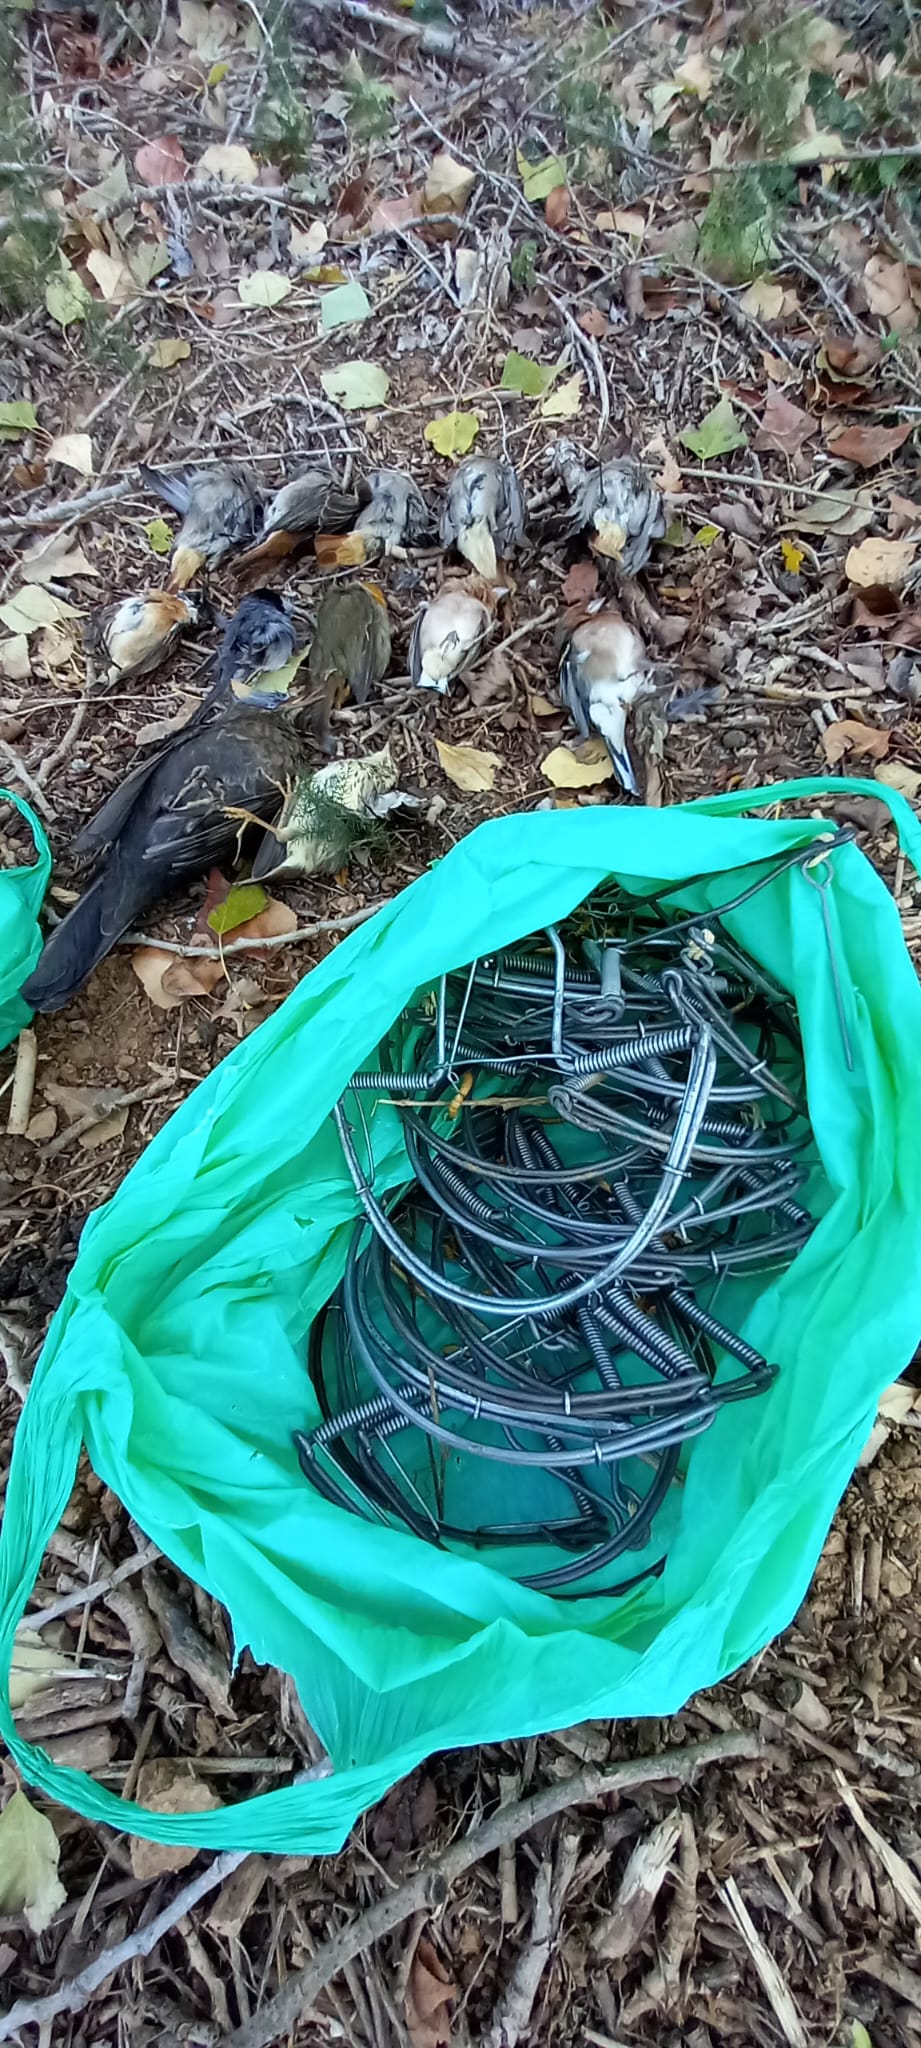 Paranys i ocells morts trobats a Terrassa (Vallès Occidental) / AGENTS RURALS